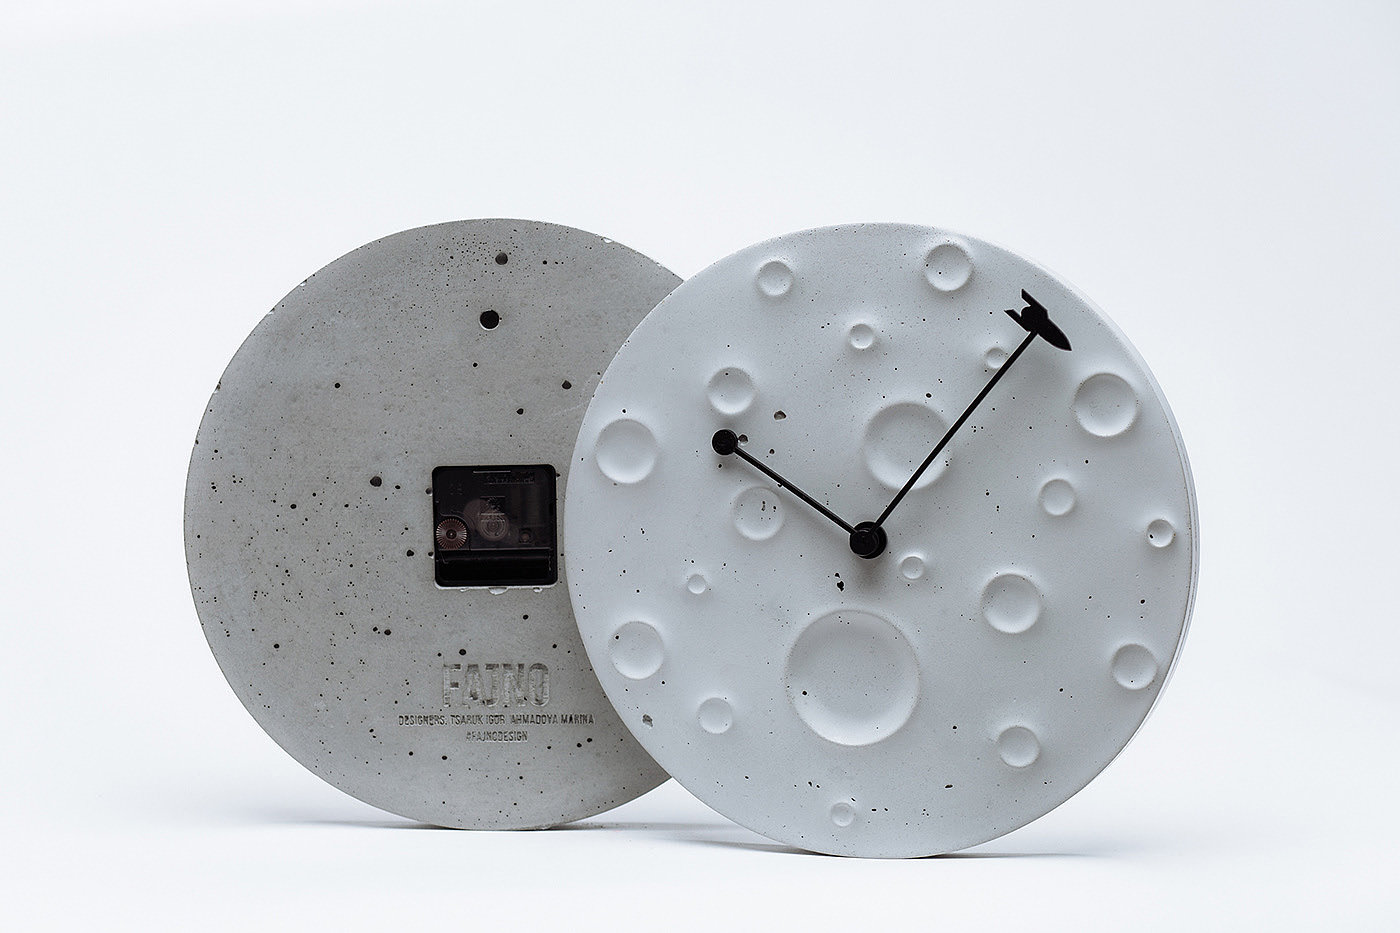 钟表，月球，主题设计，工业设计，产品设计，